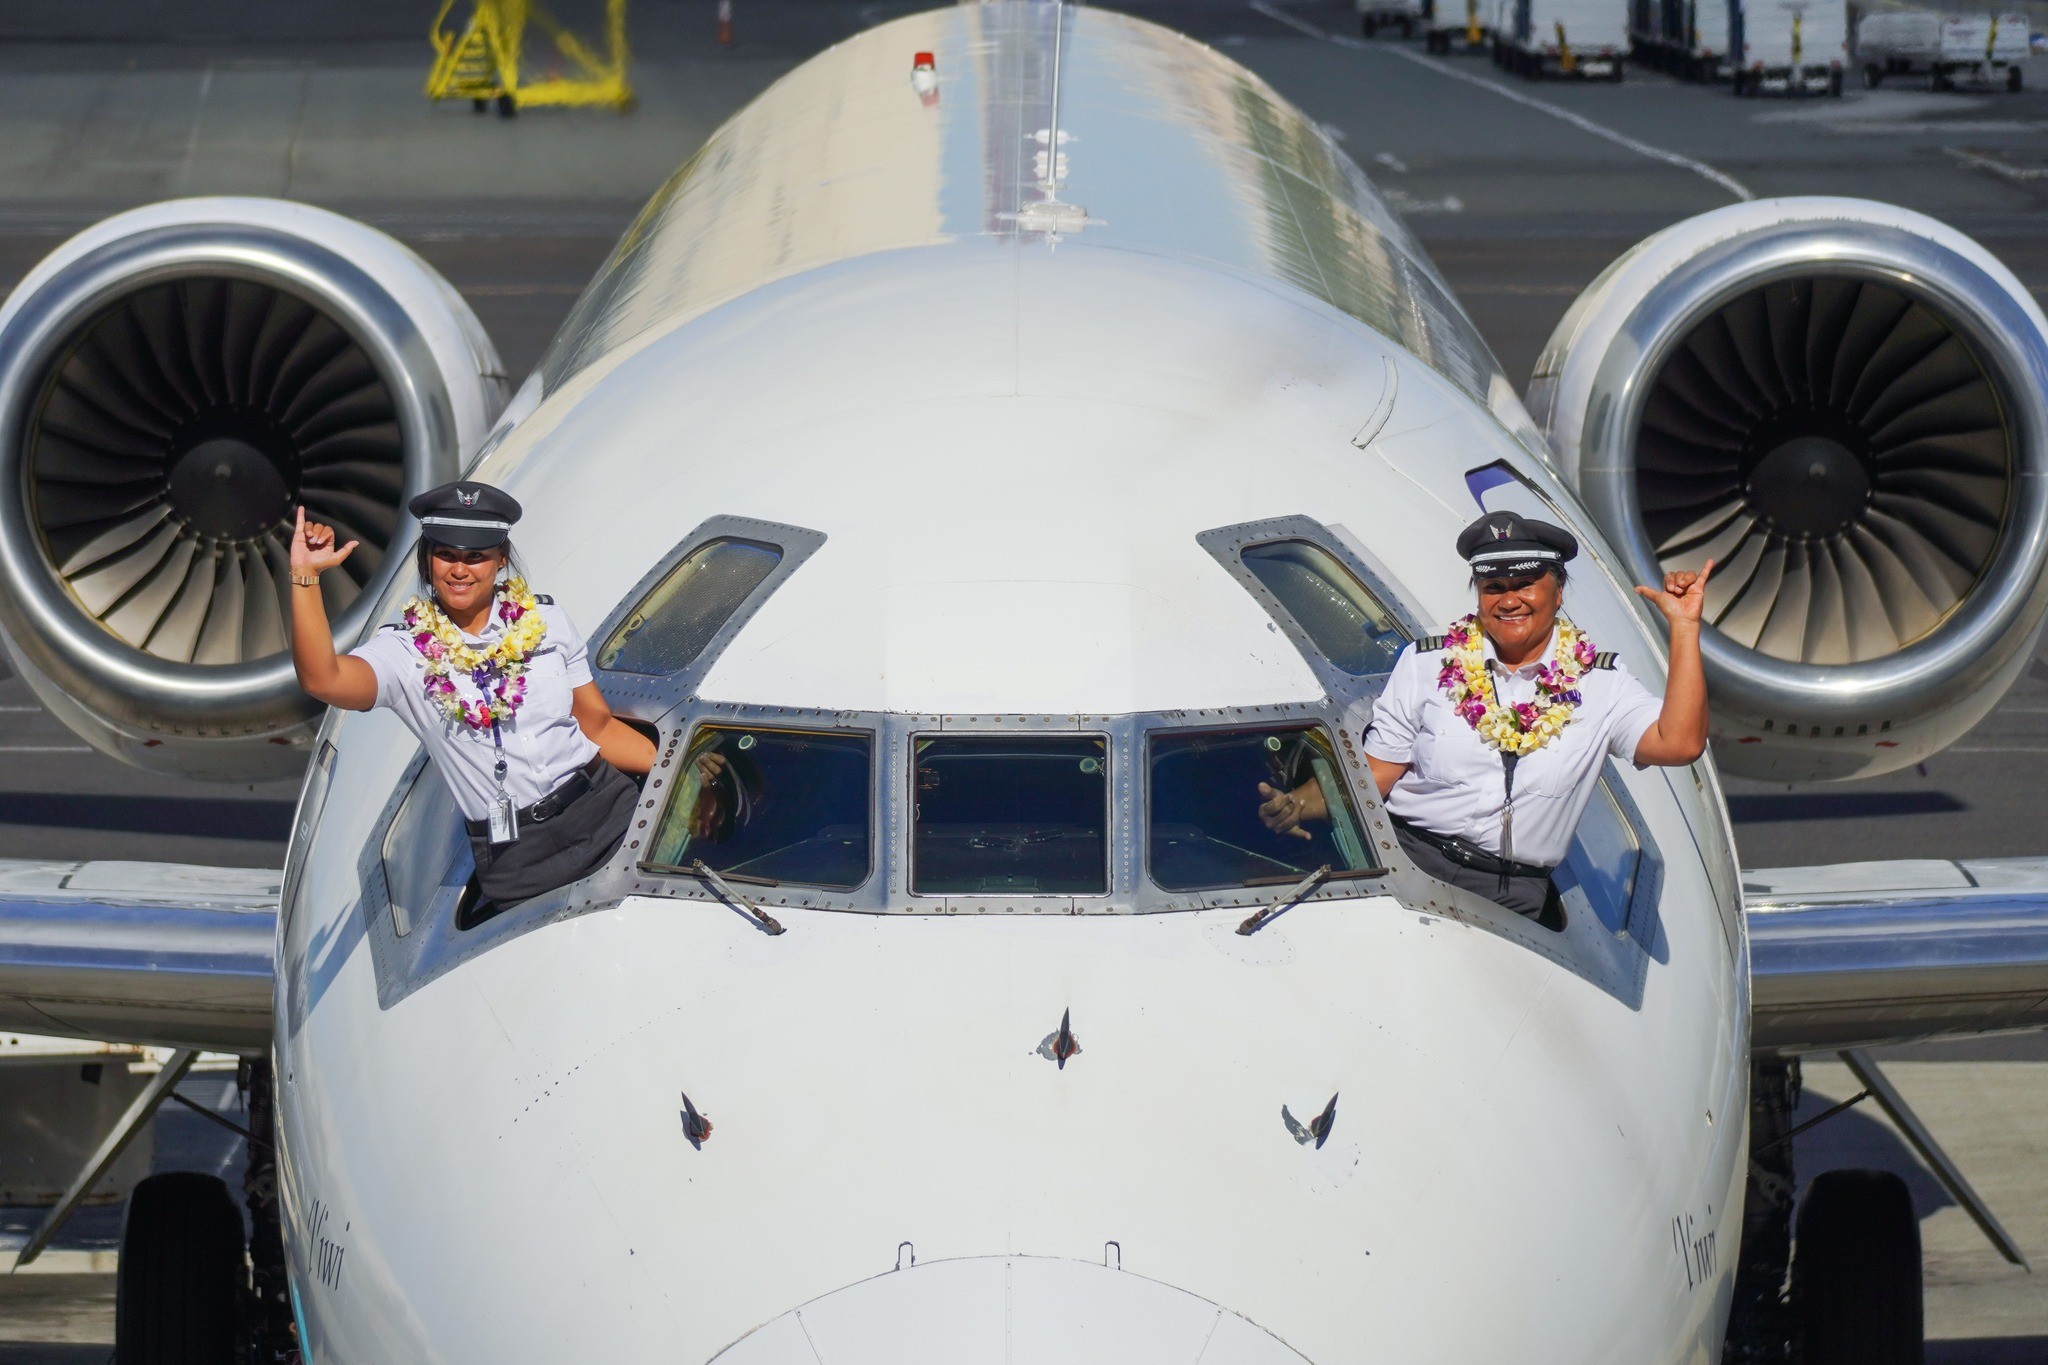 Mãe e filha comandam primeiro voo juntas pela primeira vez (Foto: Reprodução/Facebook/Hawaiian Airlines)